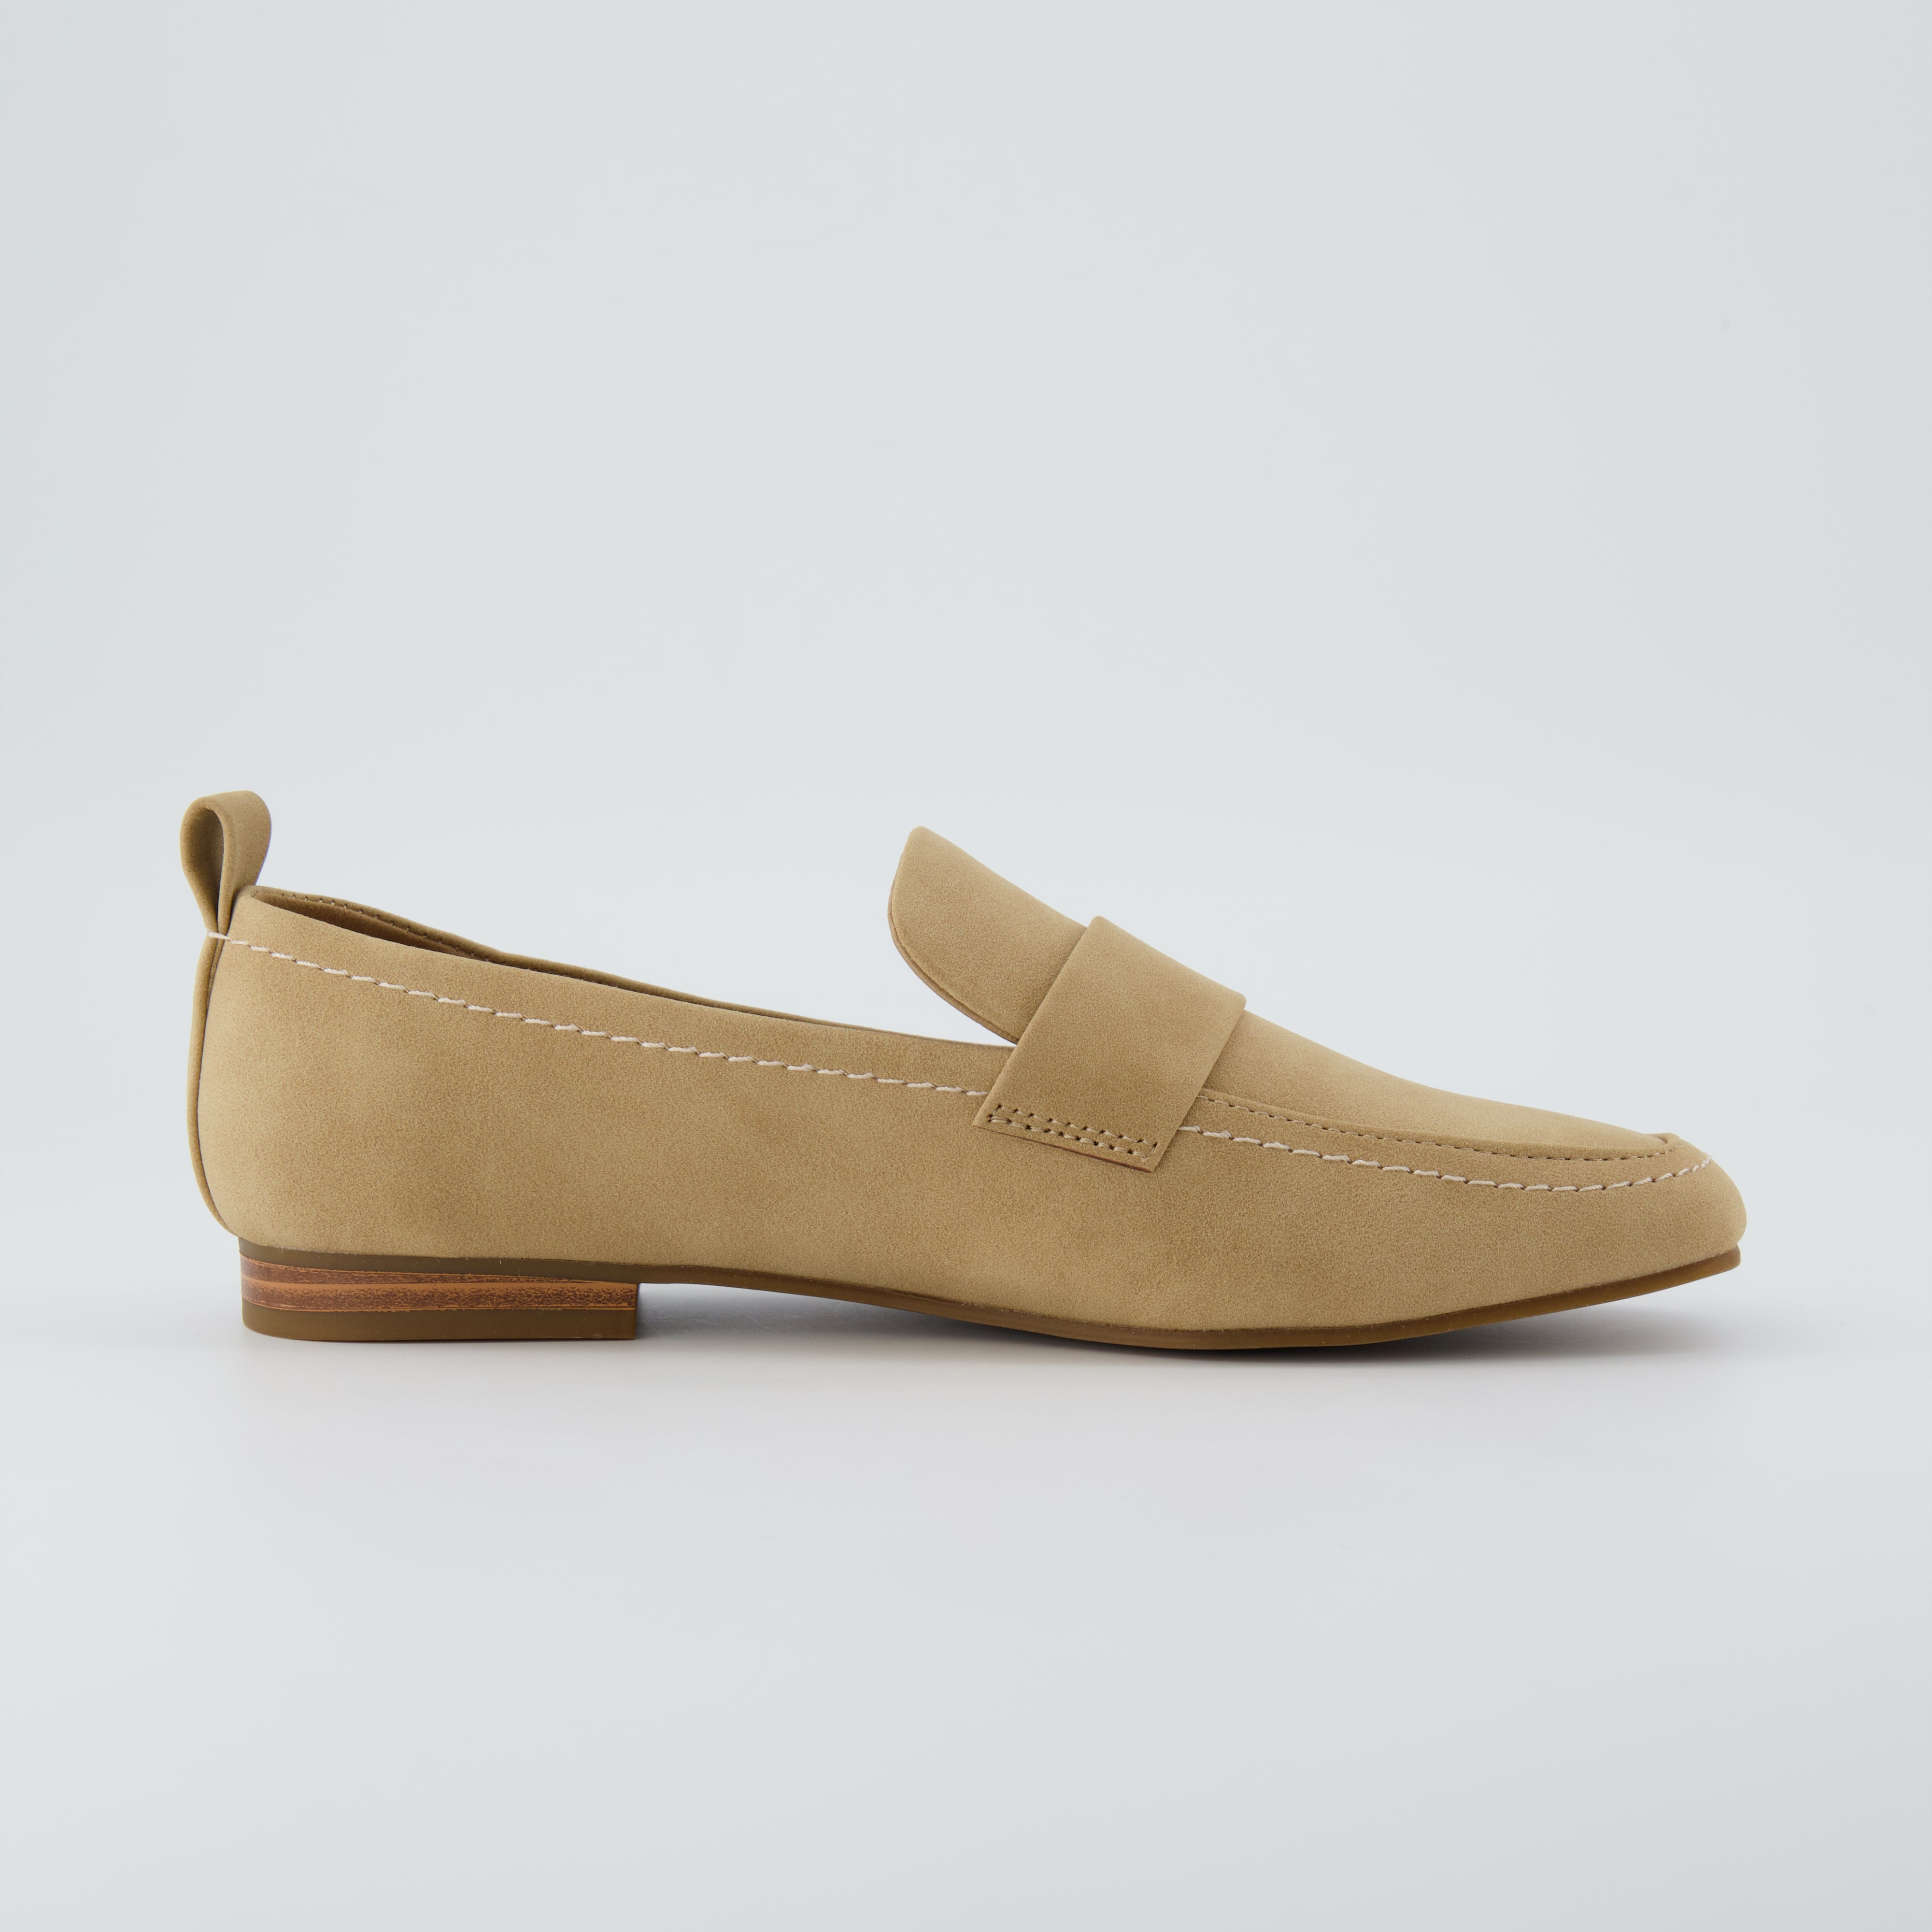 Gramercy Slip-on Loafer